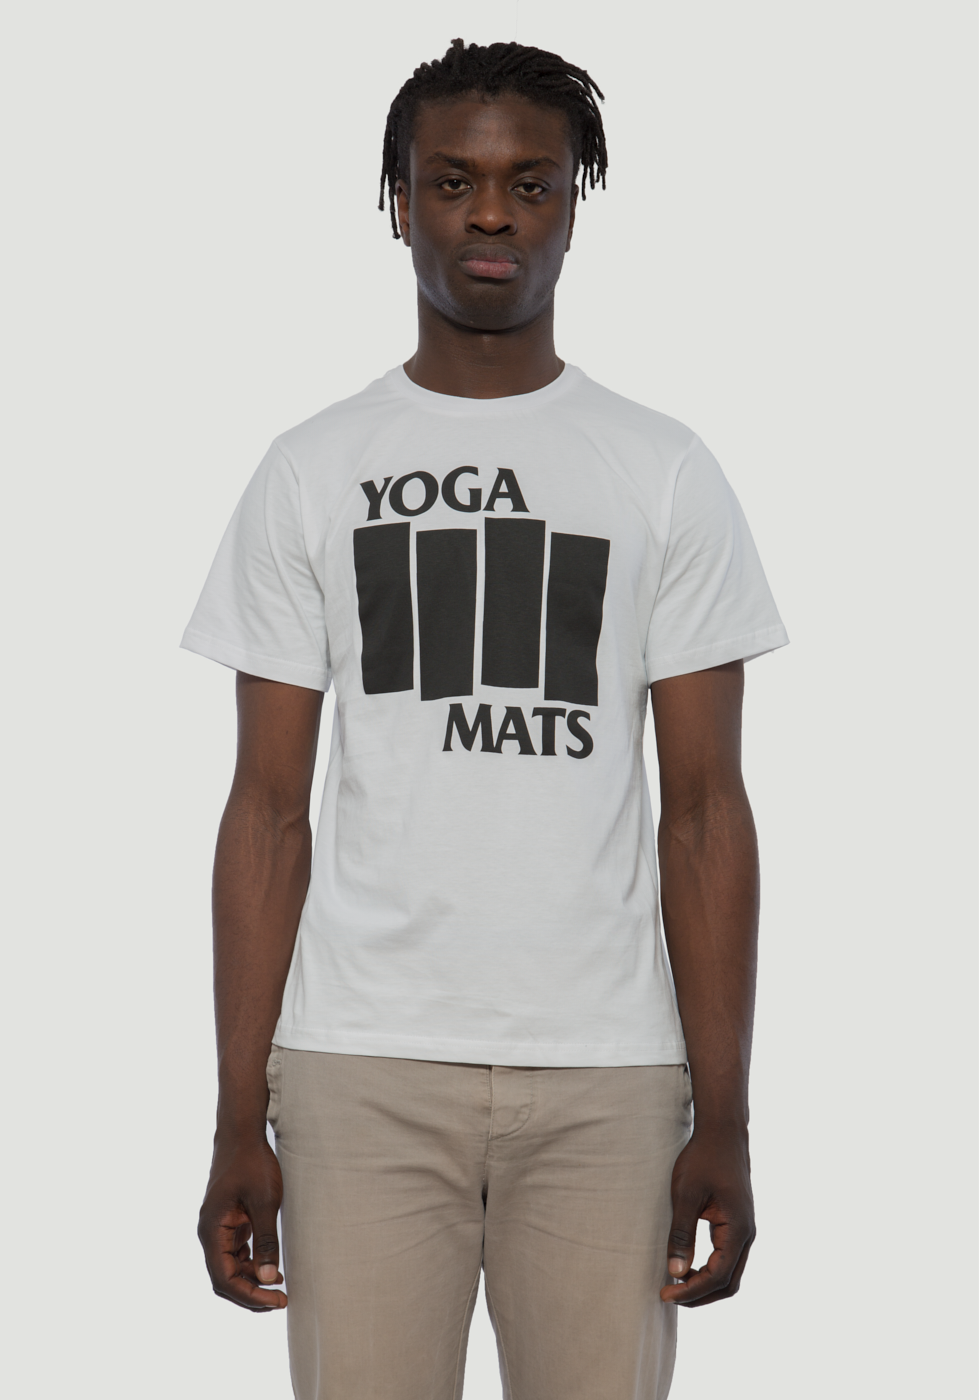 Yoga Mats Shirt